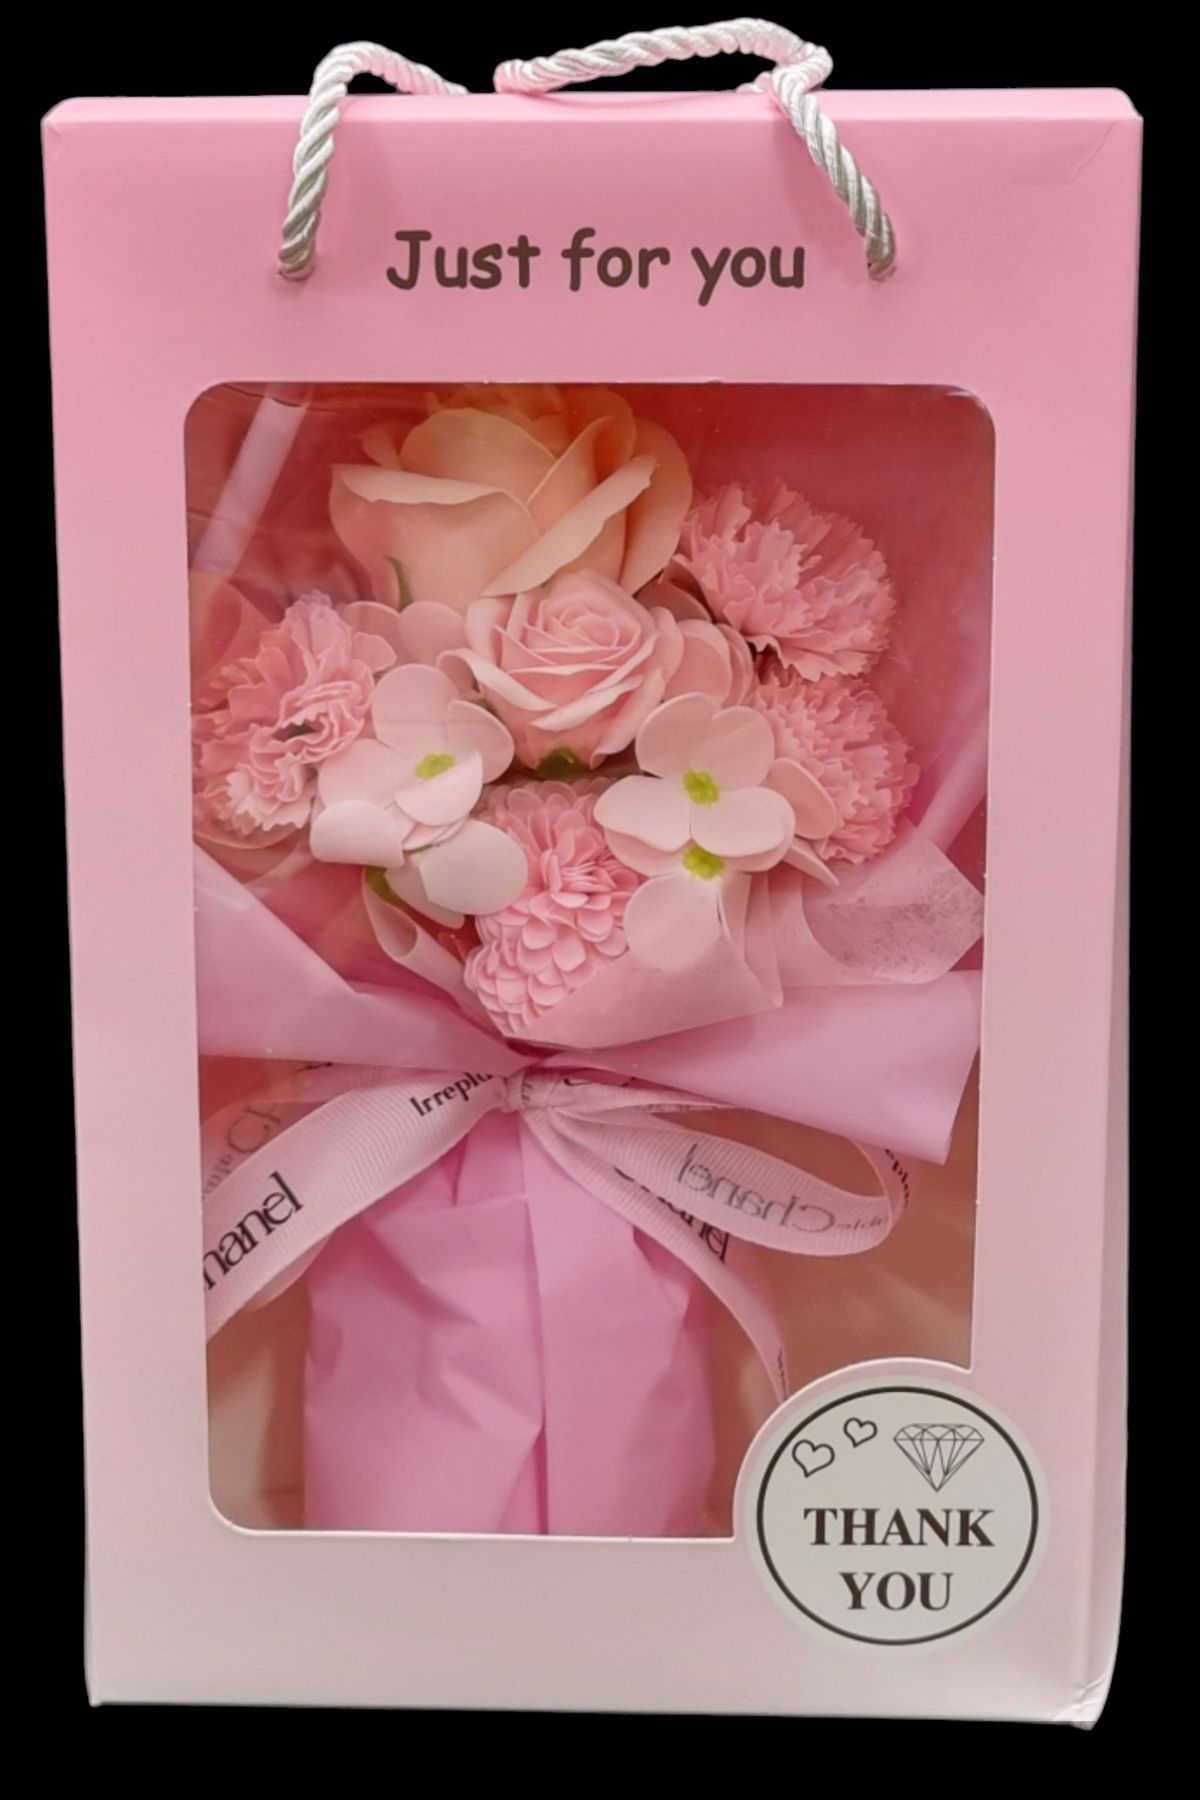 MD Aspiz Flowers Yapay Lüx Gül Kutusu Hediyesi Islak Buketi sabun gelin Doğum Günü Sevgiliye Ağacı Saksı çiçeği